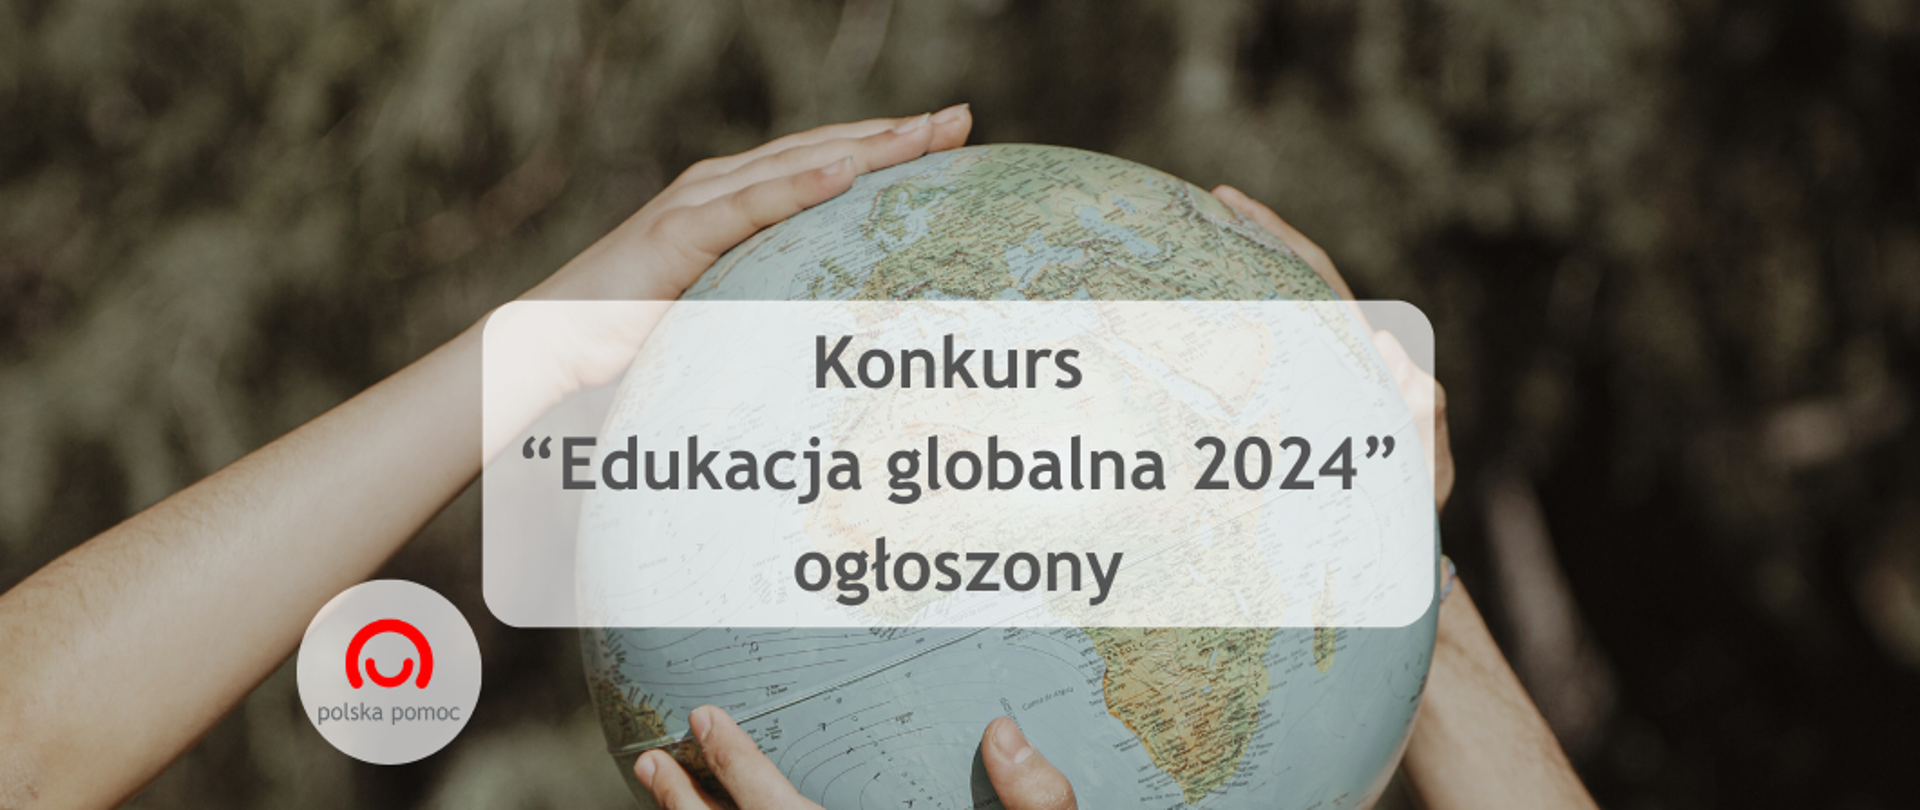 Informacja o ogłoszeniu konkursu Edukacja globalna 2024 a w tle kilka par rąk trzymających globus.